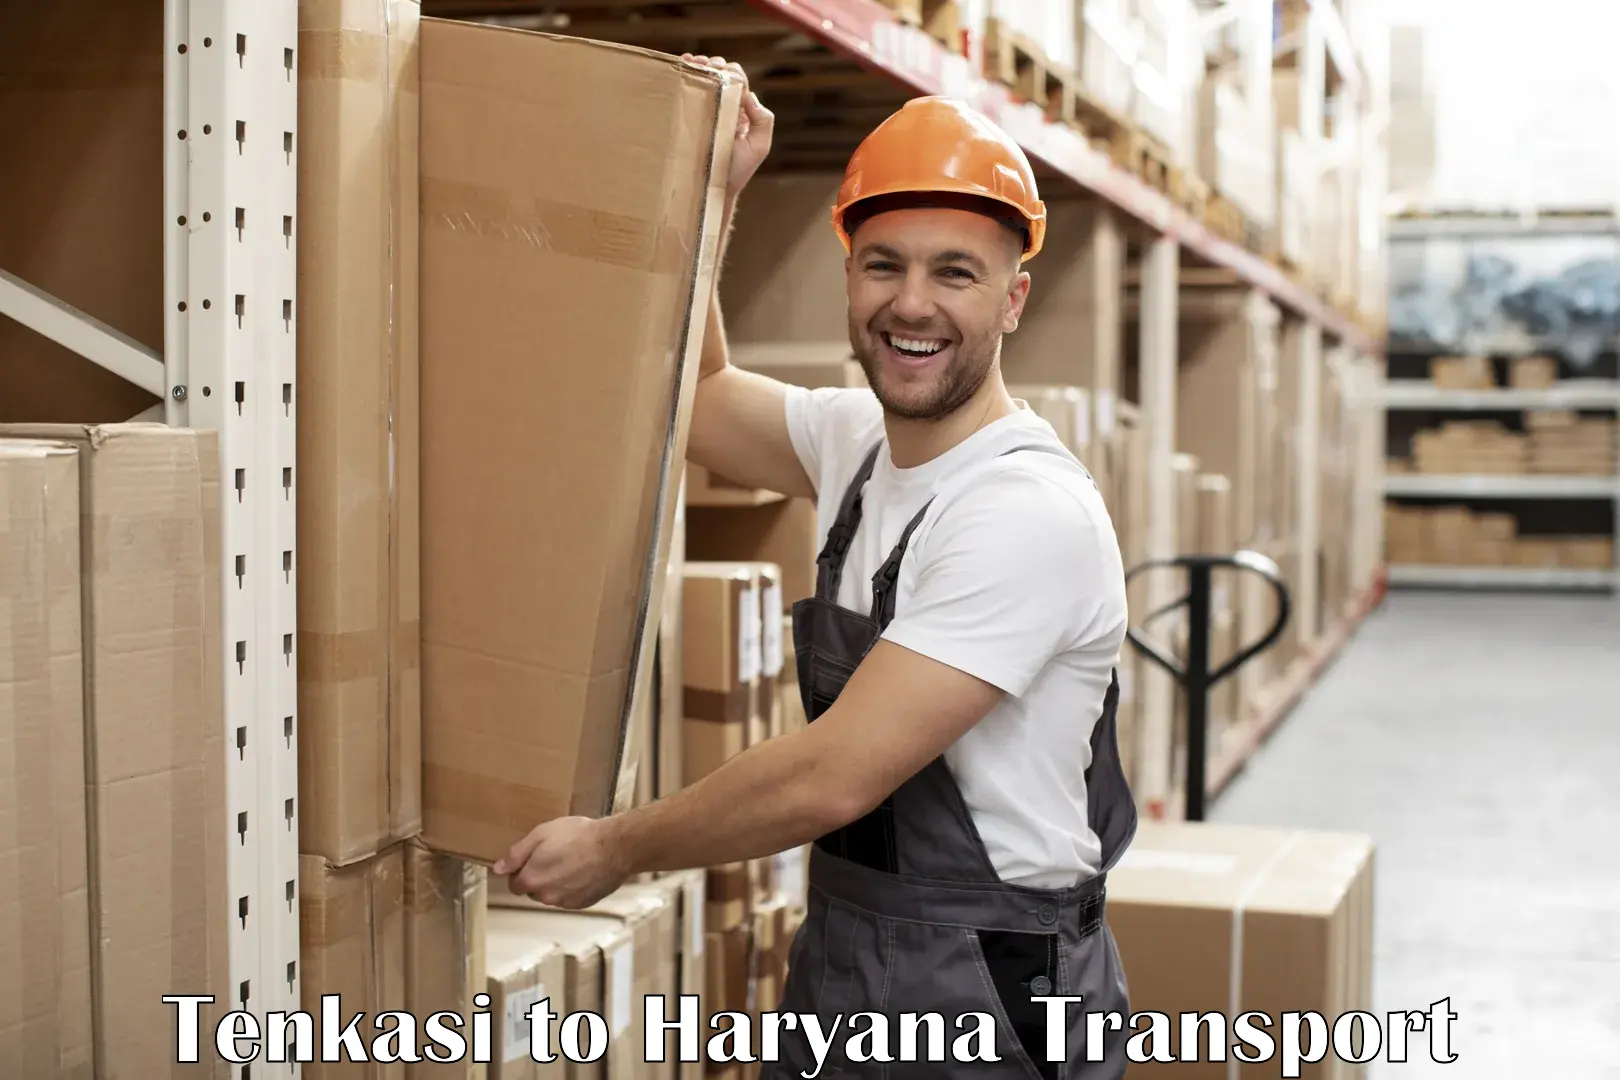 Furniture transport service Tenkasi to Gurgaon